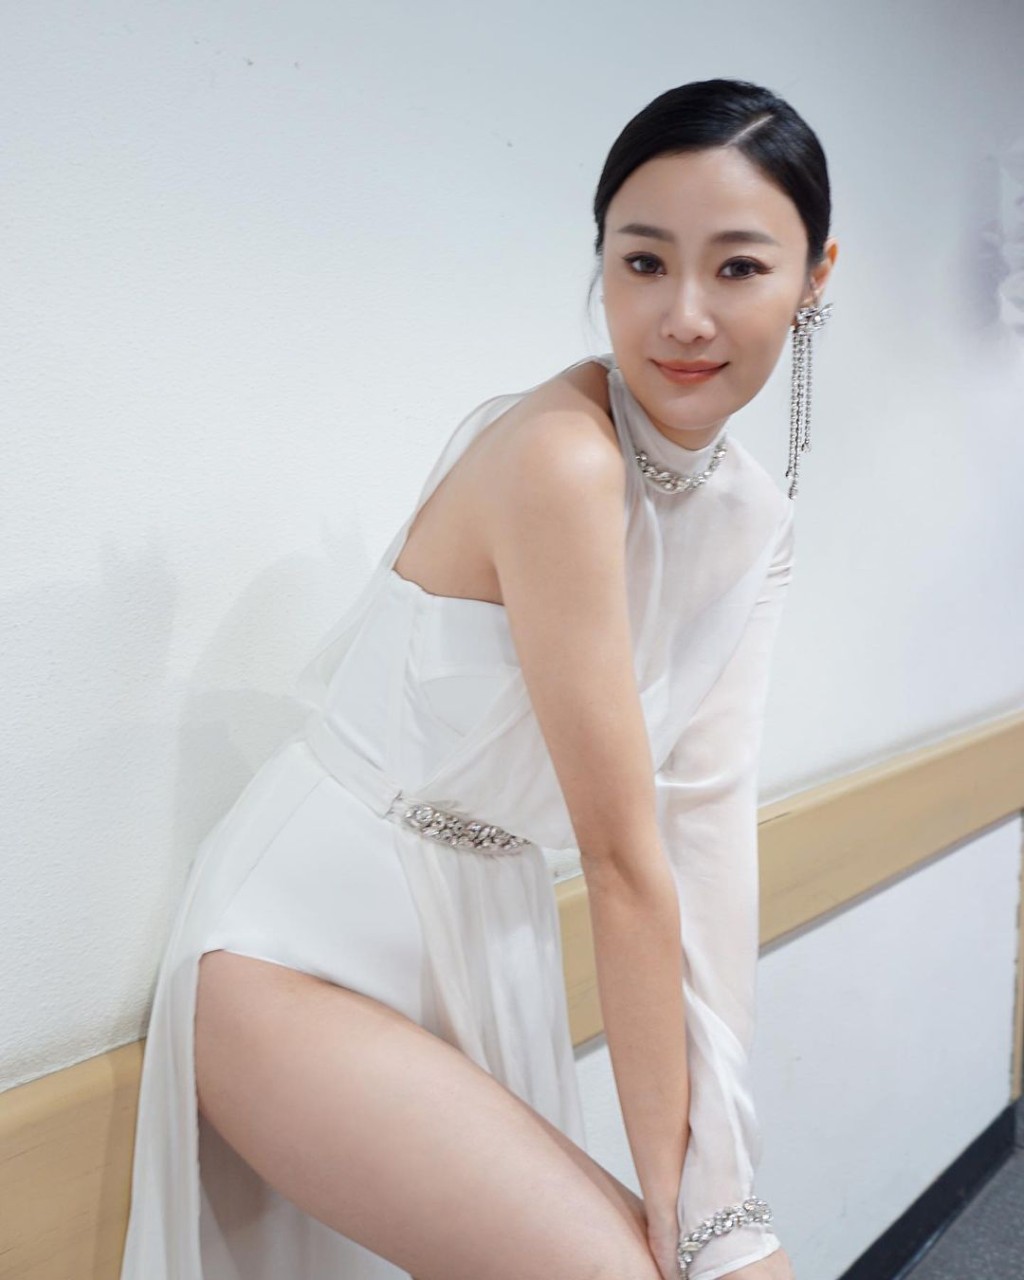 朱智贤去年出席《2022年香港小姐竞选决赛》时，被网民质疑「再度进化」。